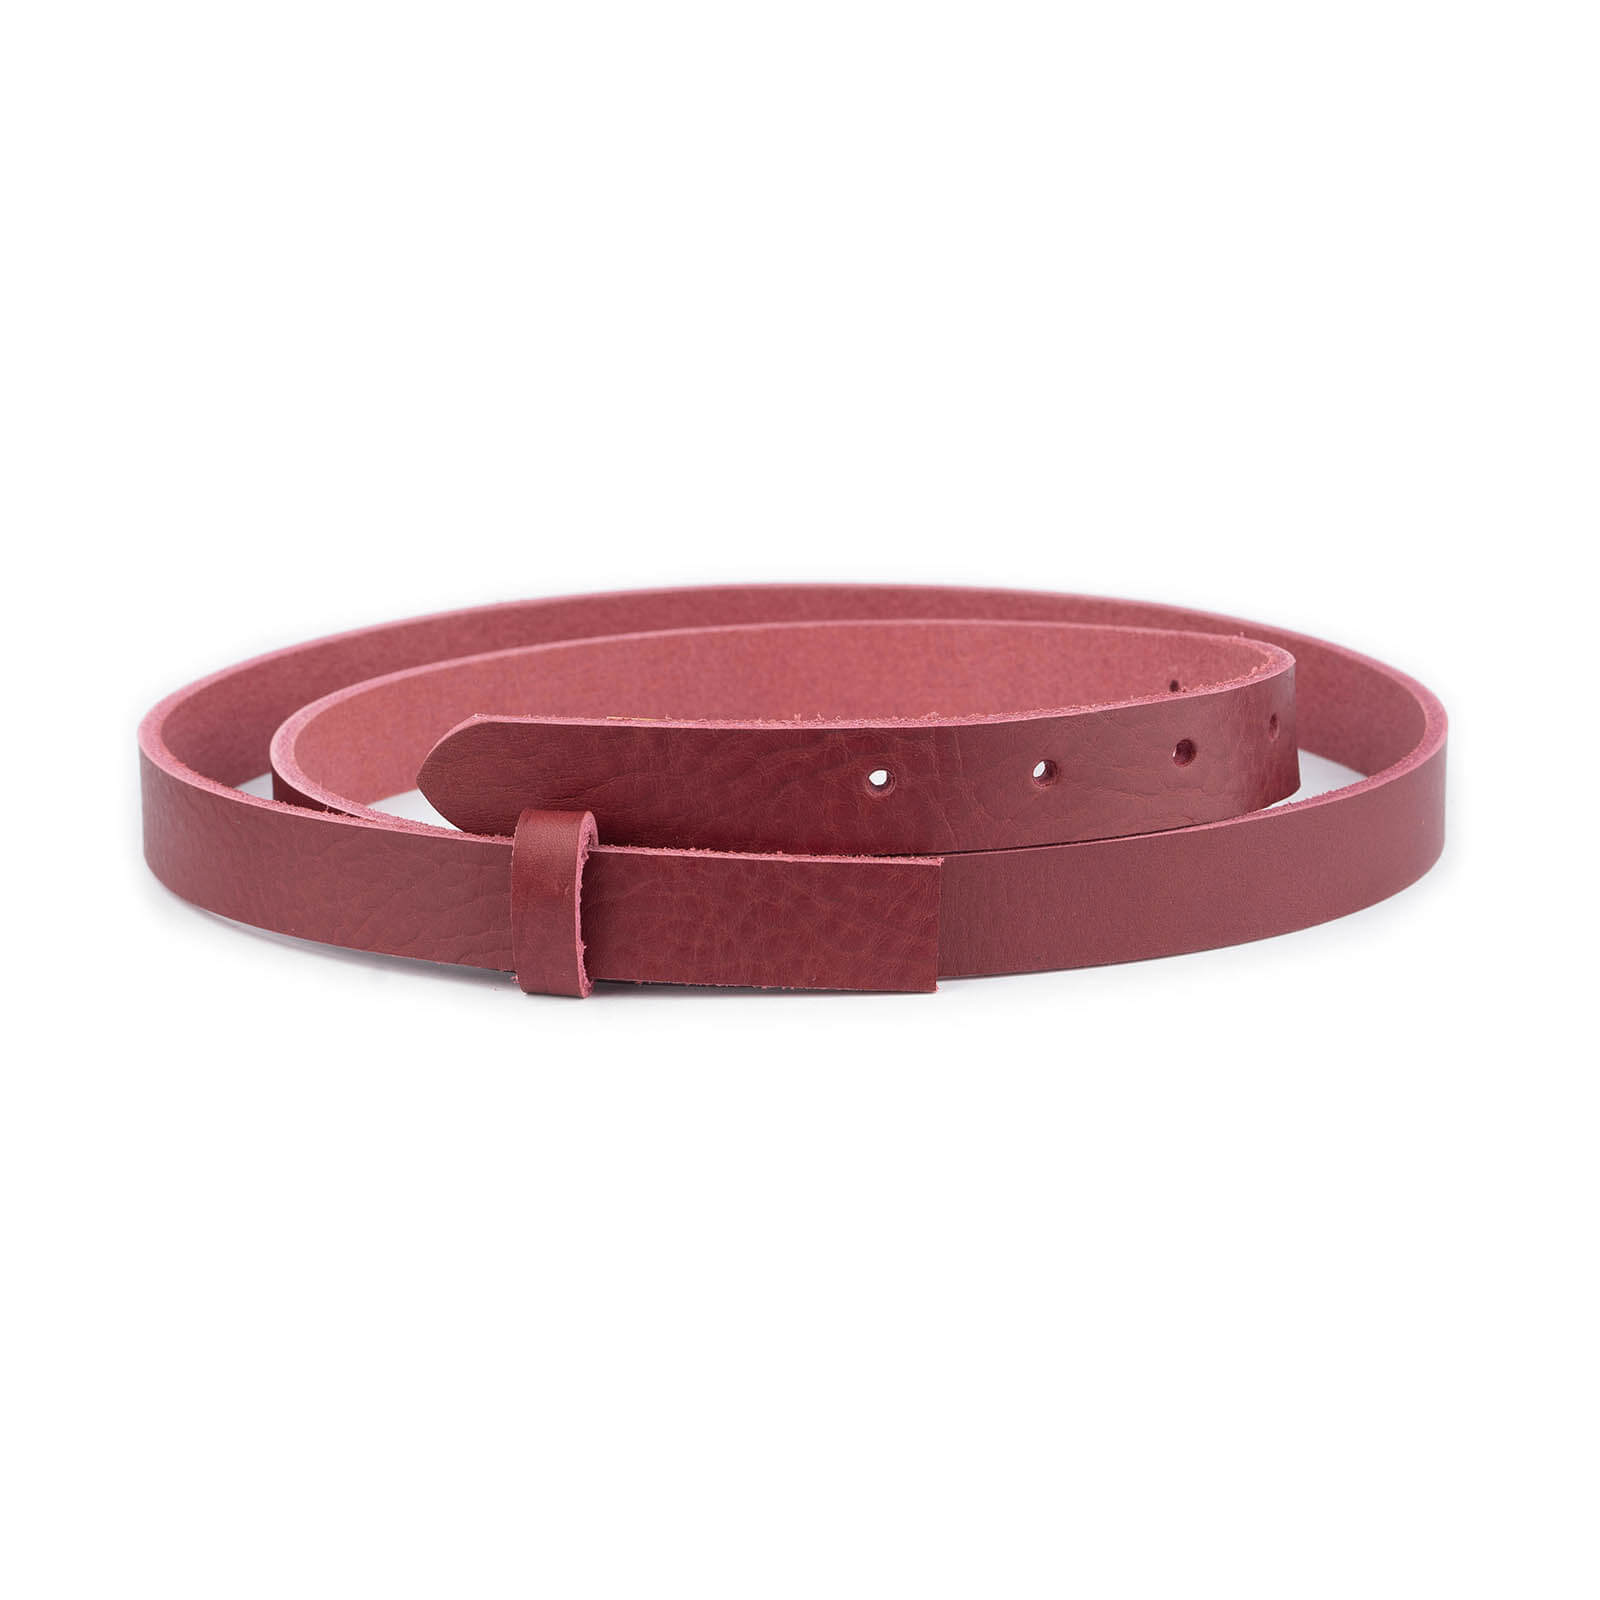 WIDE LEATHER Belt,extend Leather Belt,snap Belt Extender,belt